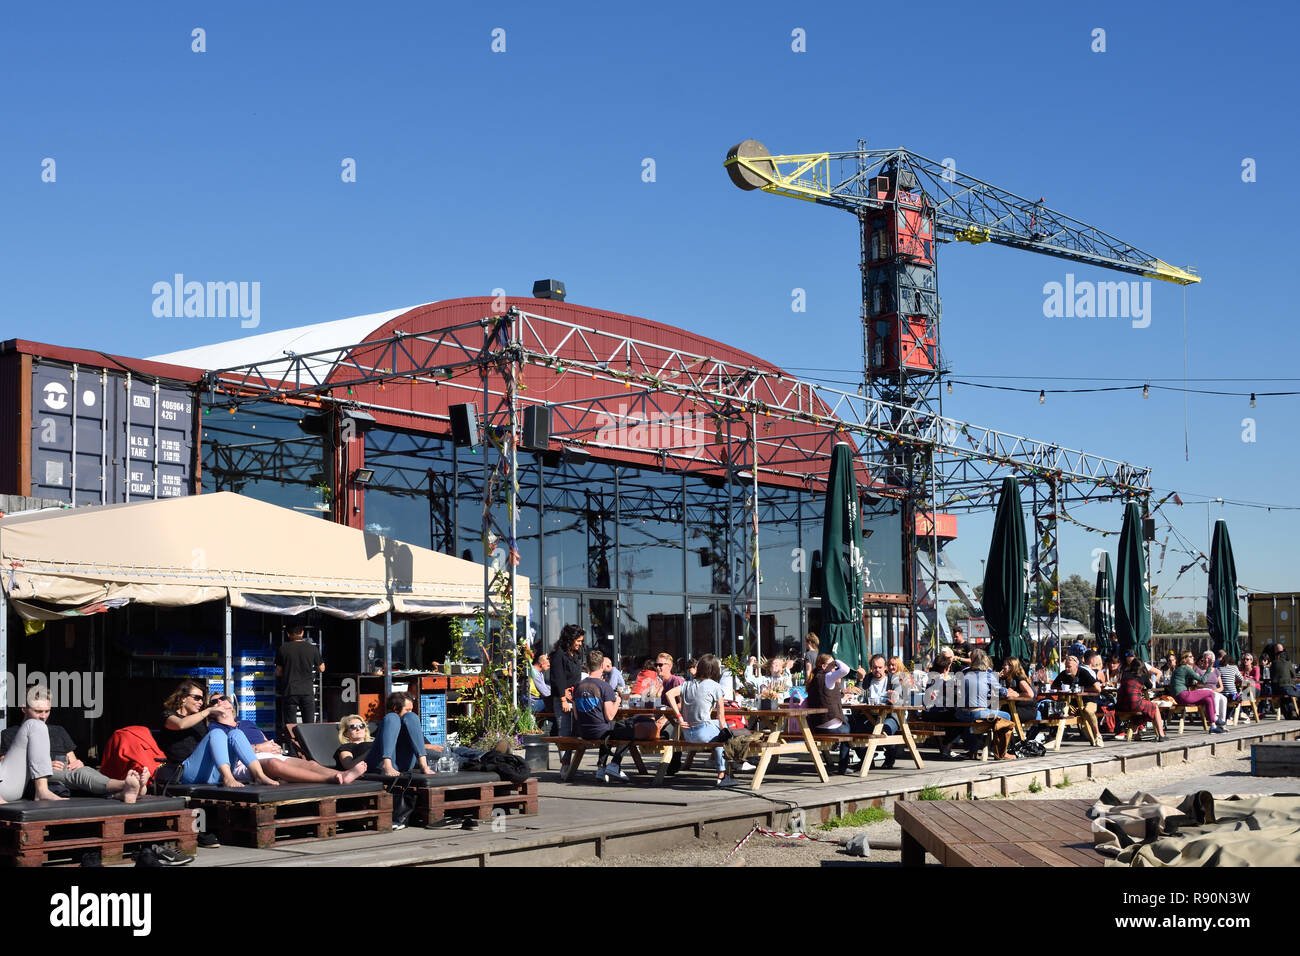 Pllek beach café pub construido de materias primas industriales ( contenedores de transporte ) restaurante en el muelle IJ Port NDSM en Amsterdam, Países Bajos Foto de stock